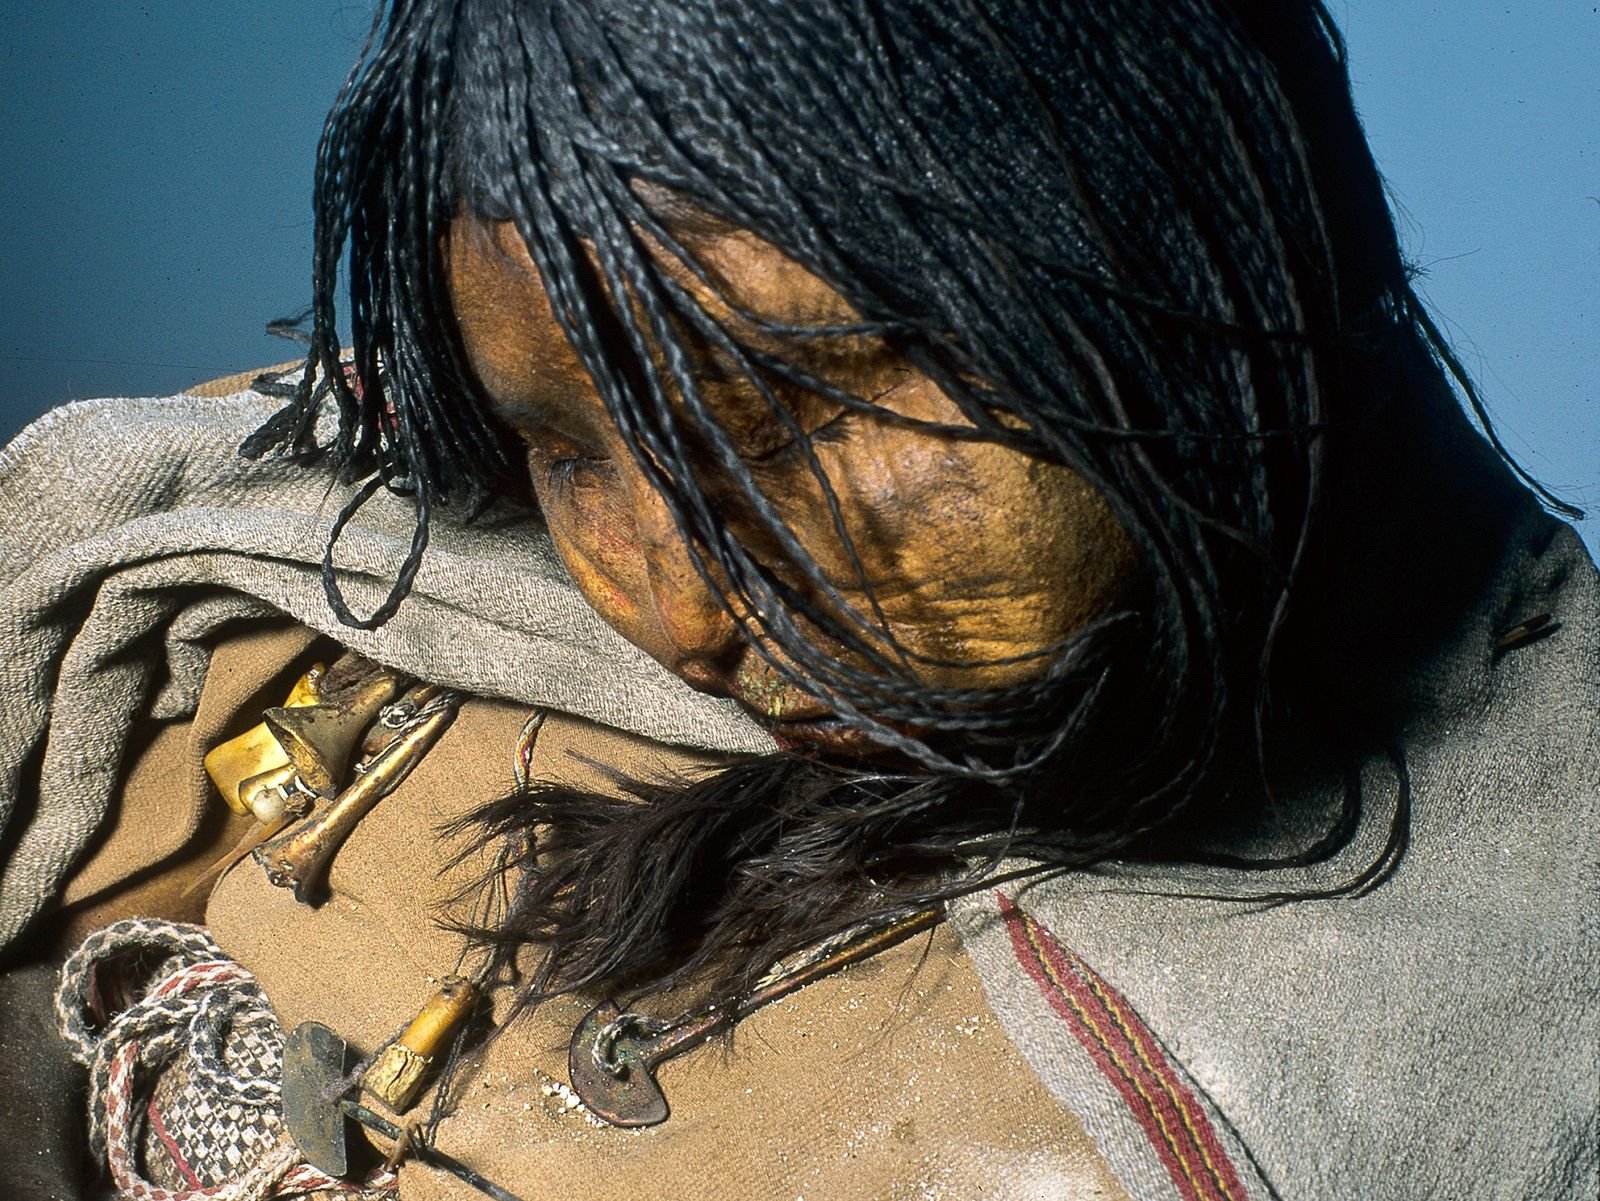 Les enfants incas étaient drogués avant d’être sacrifiés